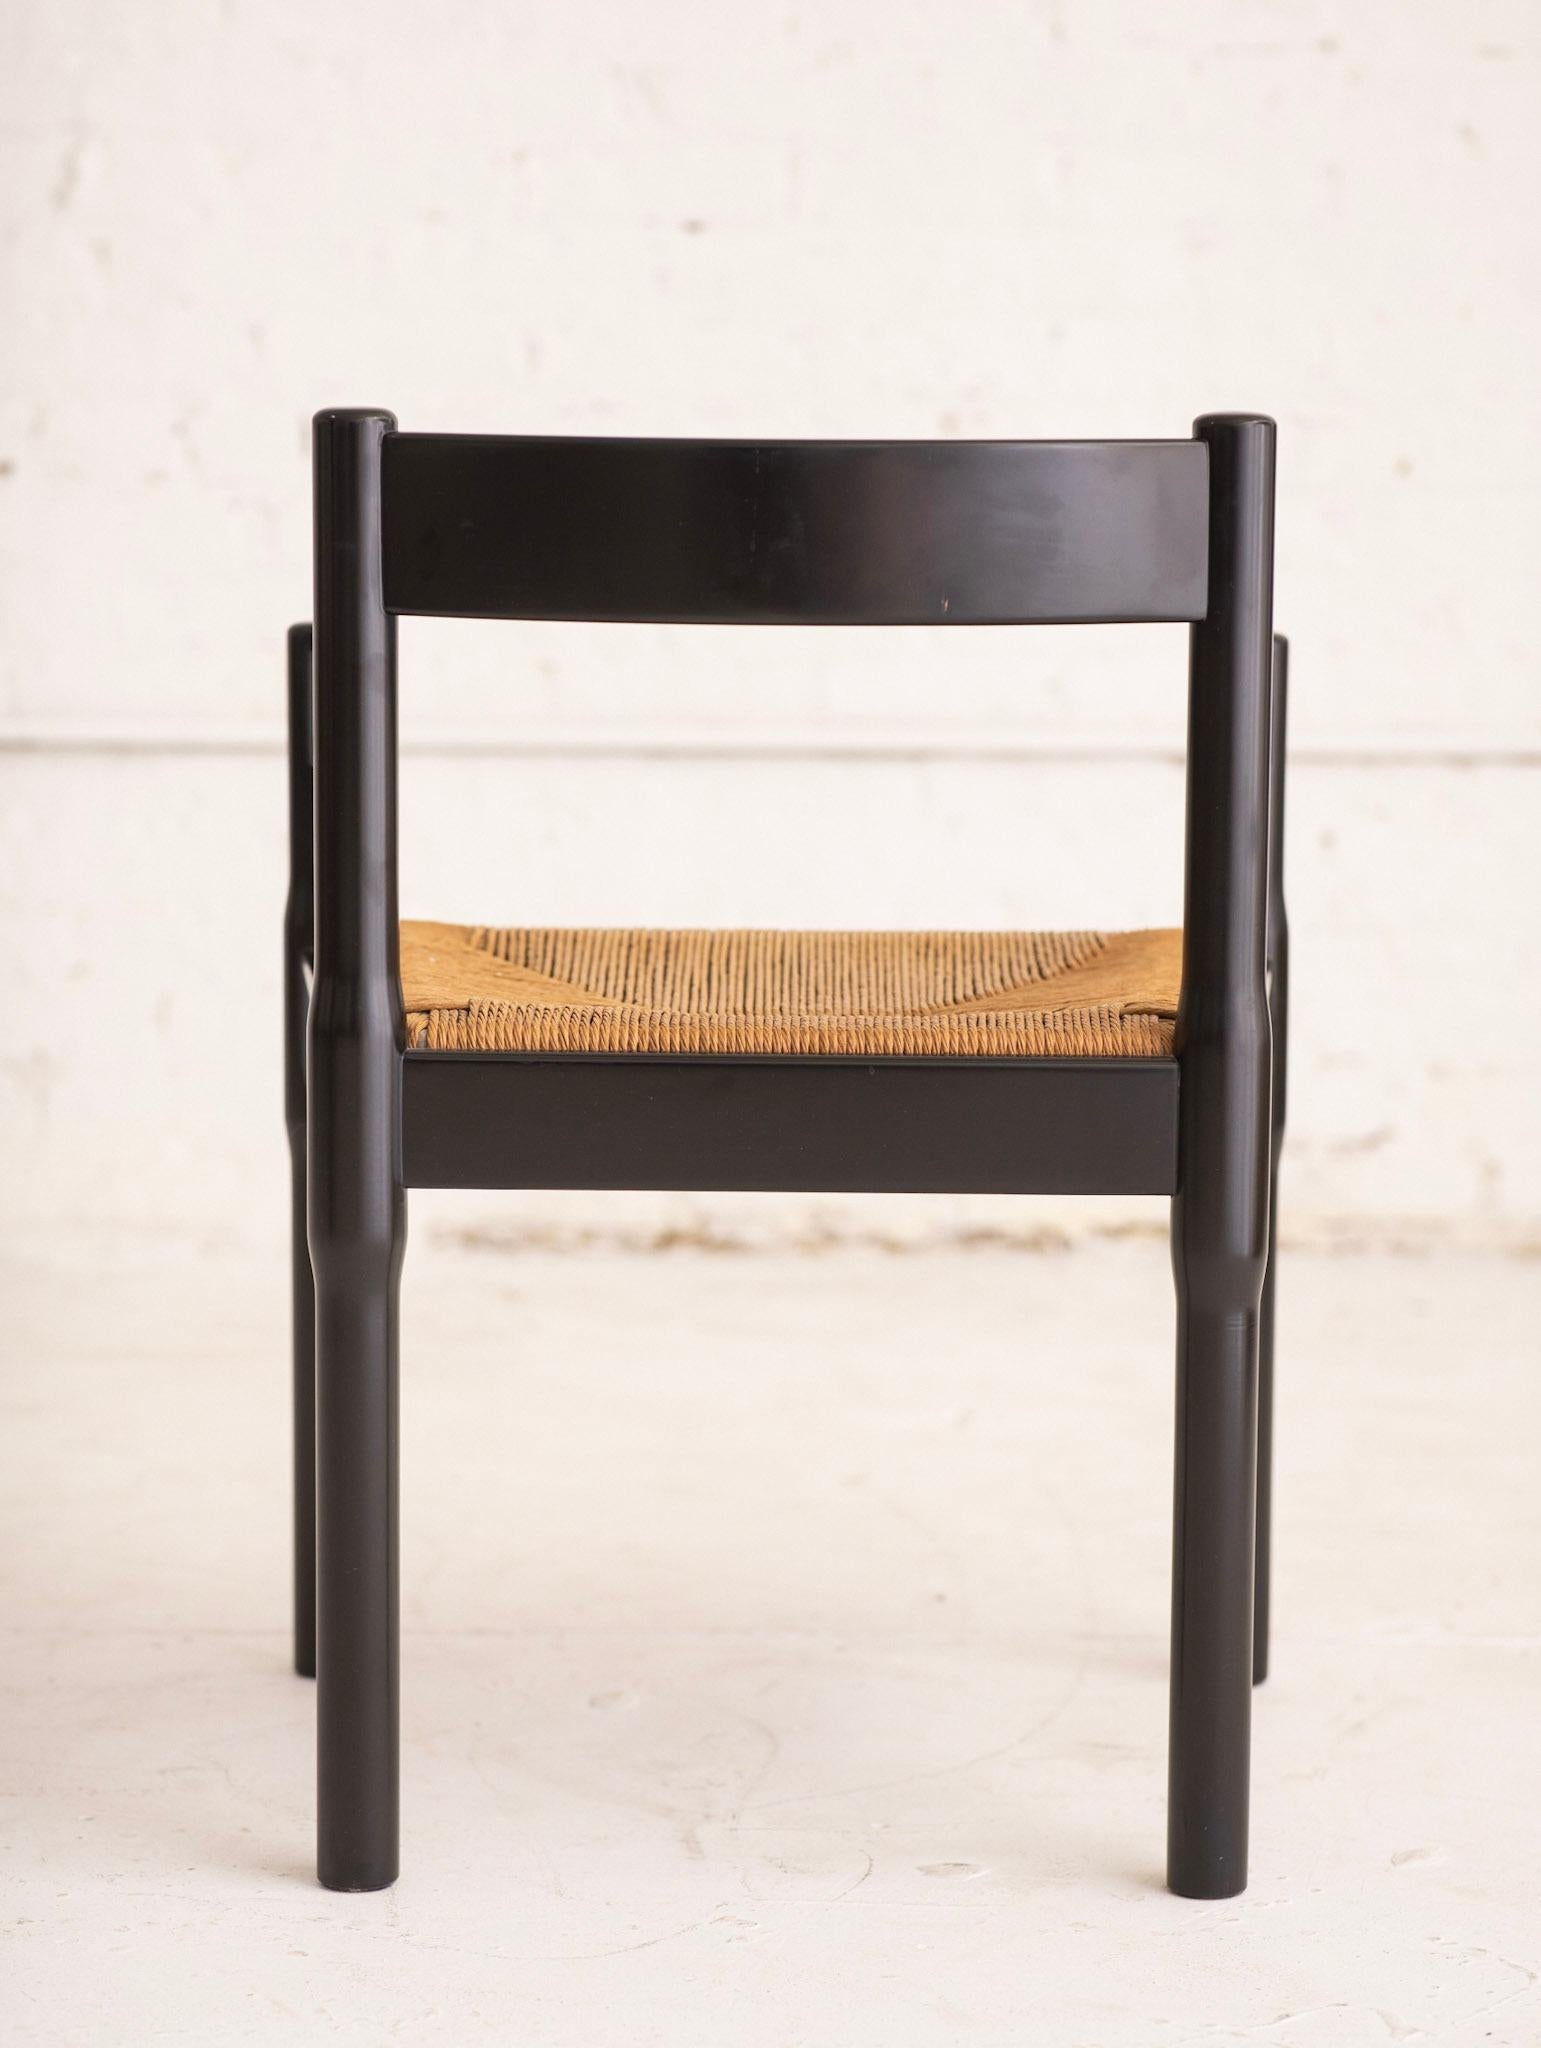 Italian Vico Magistretti “Carimate” Chair by Stendig